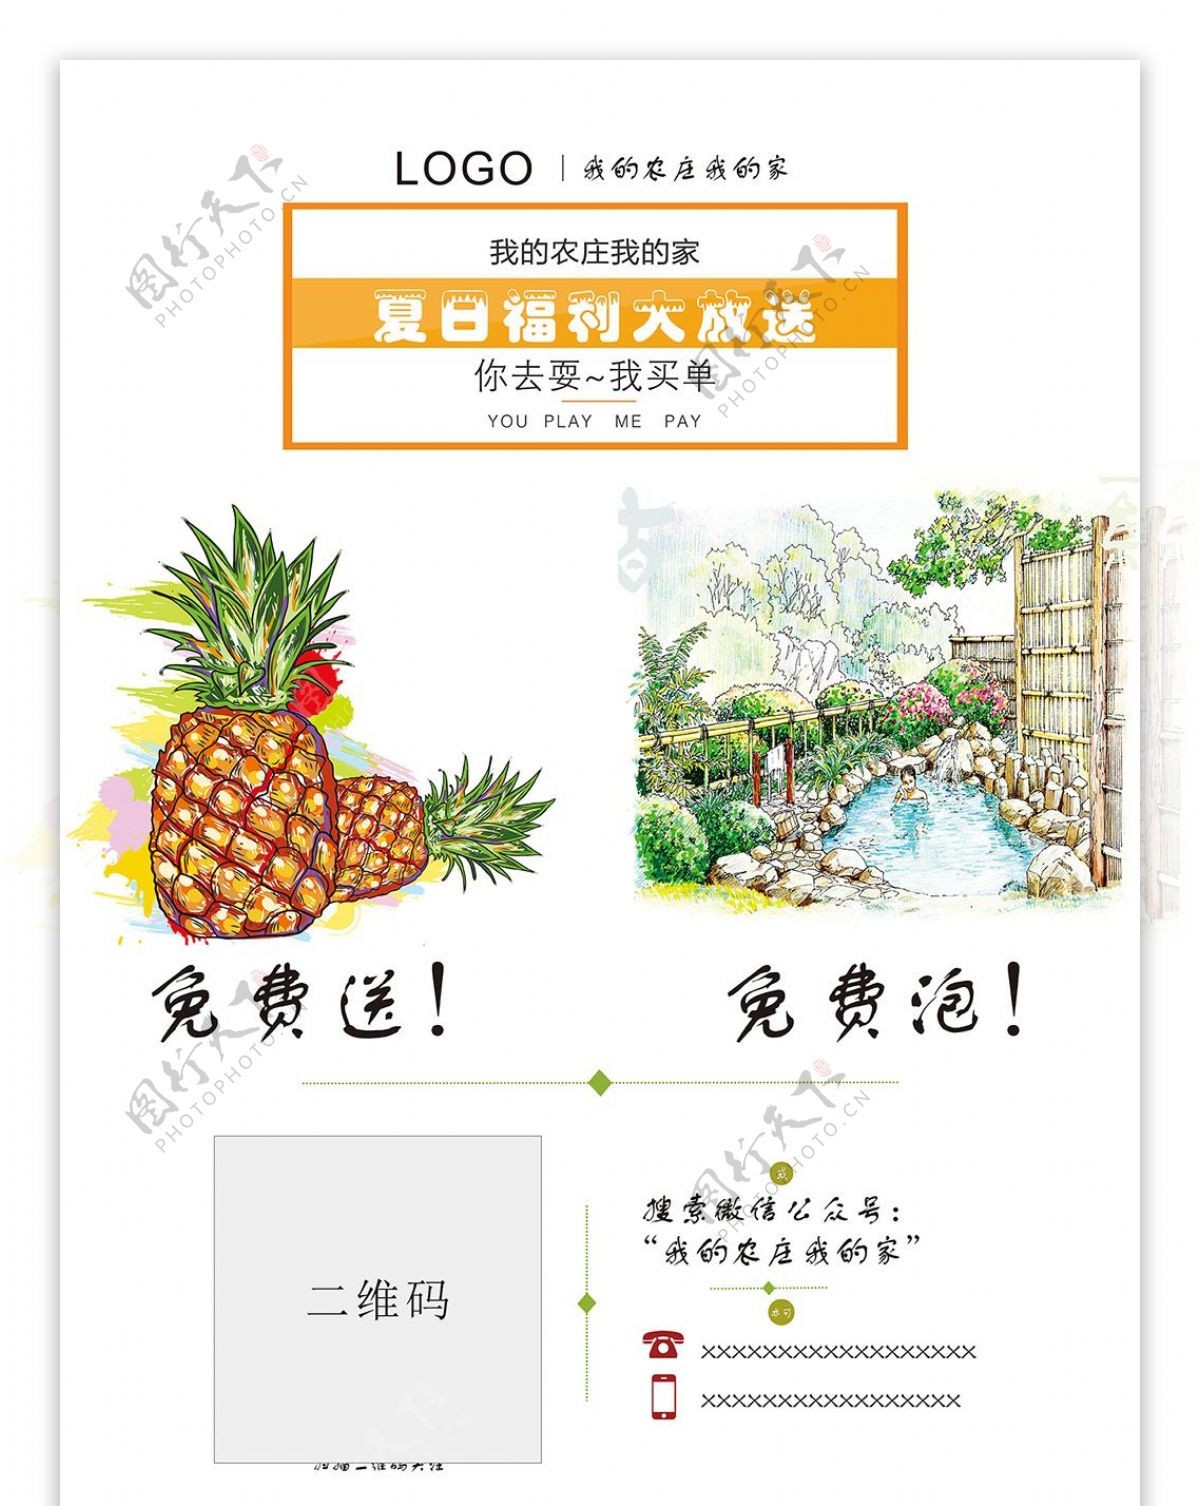 扫码送送水果送门票夏日福利农家乐宣传促销